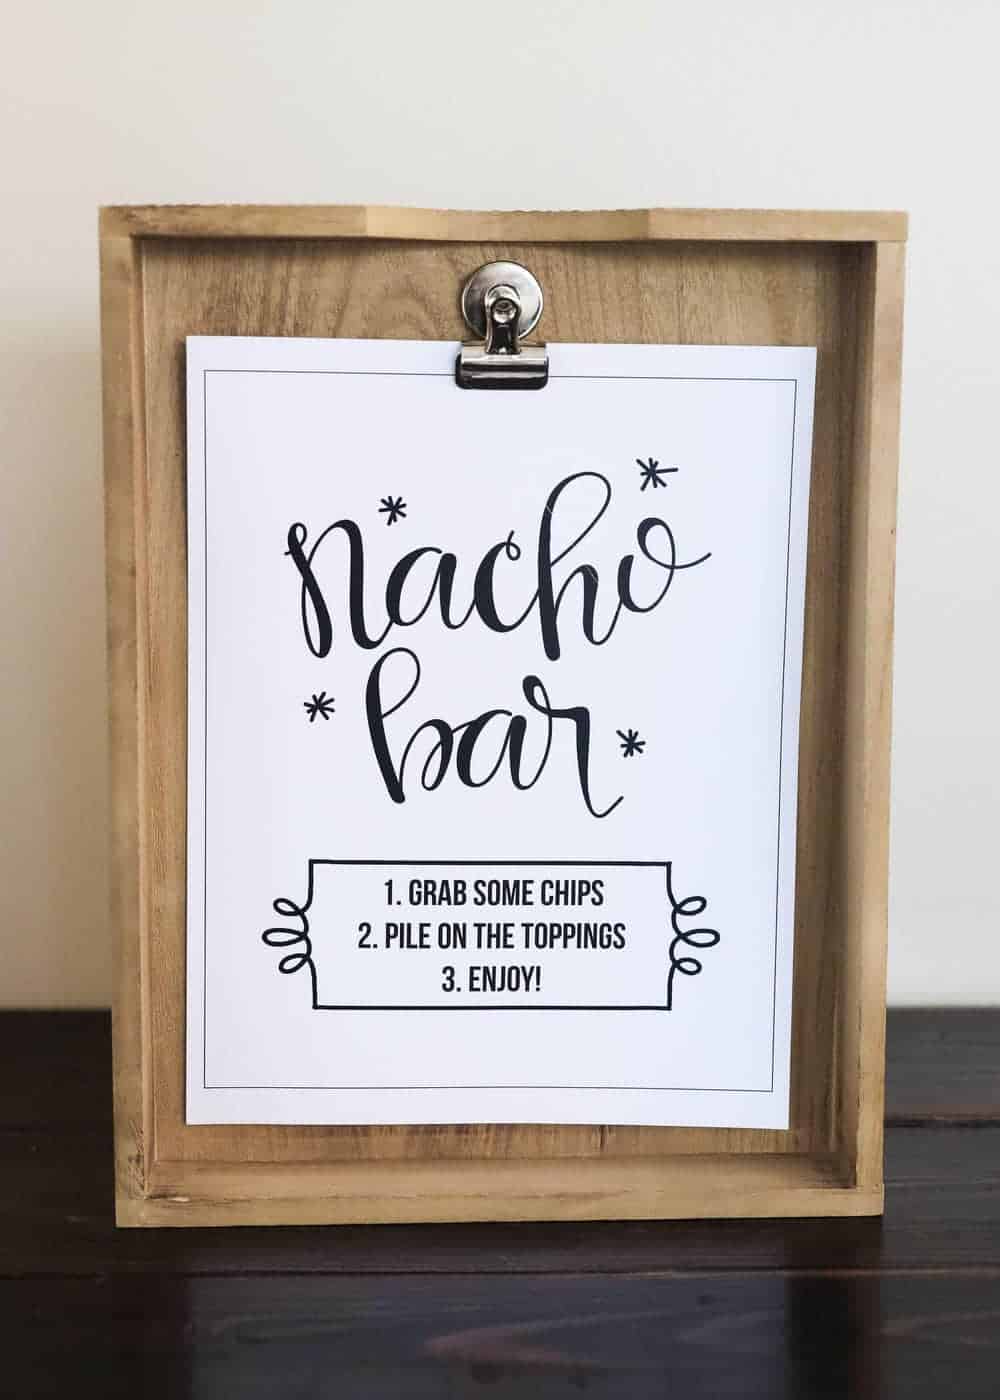 Nacho bar printable sign on a wood clipboard.